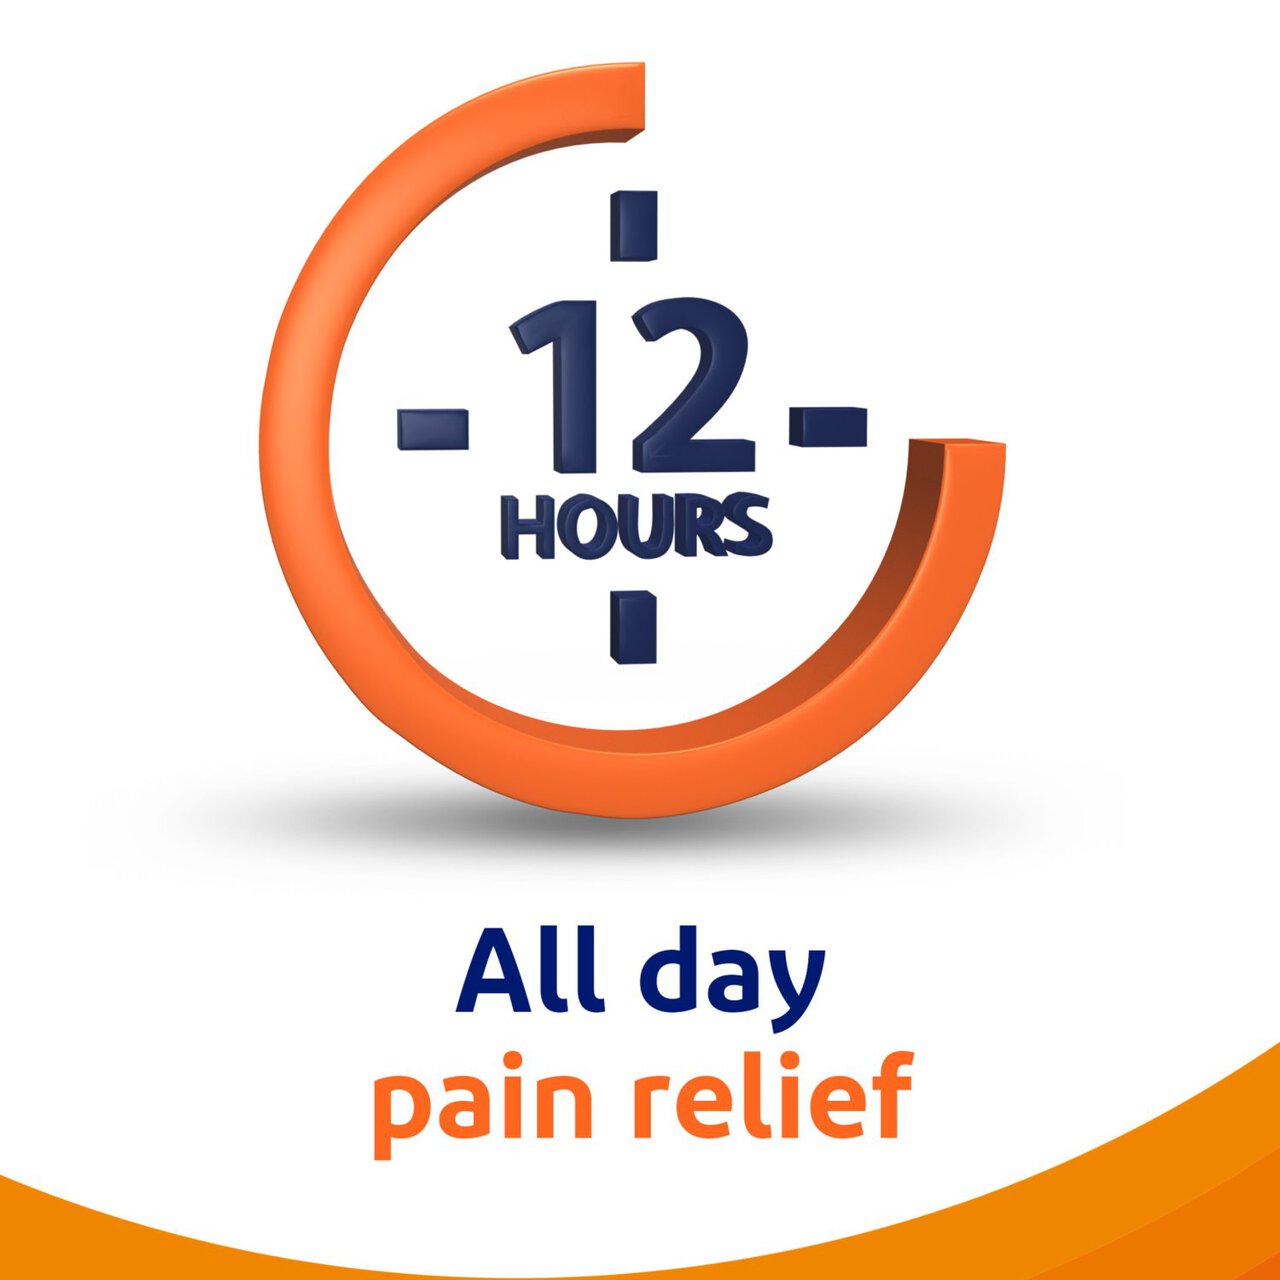 Voltarol Joint Pain Relief Gel 2.32% 50g